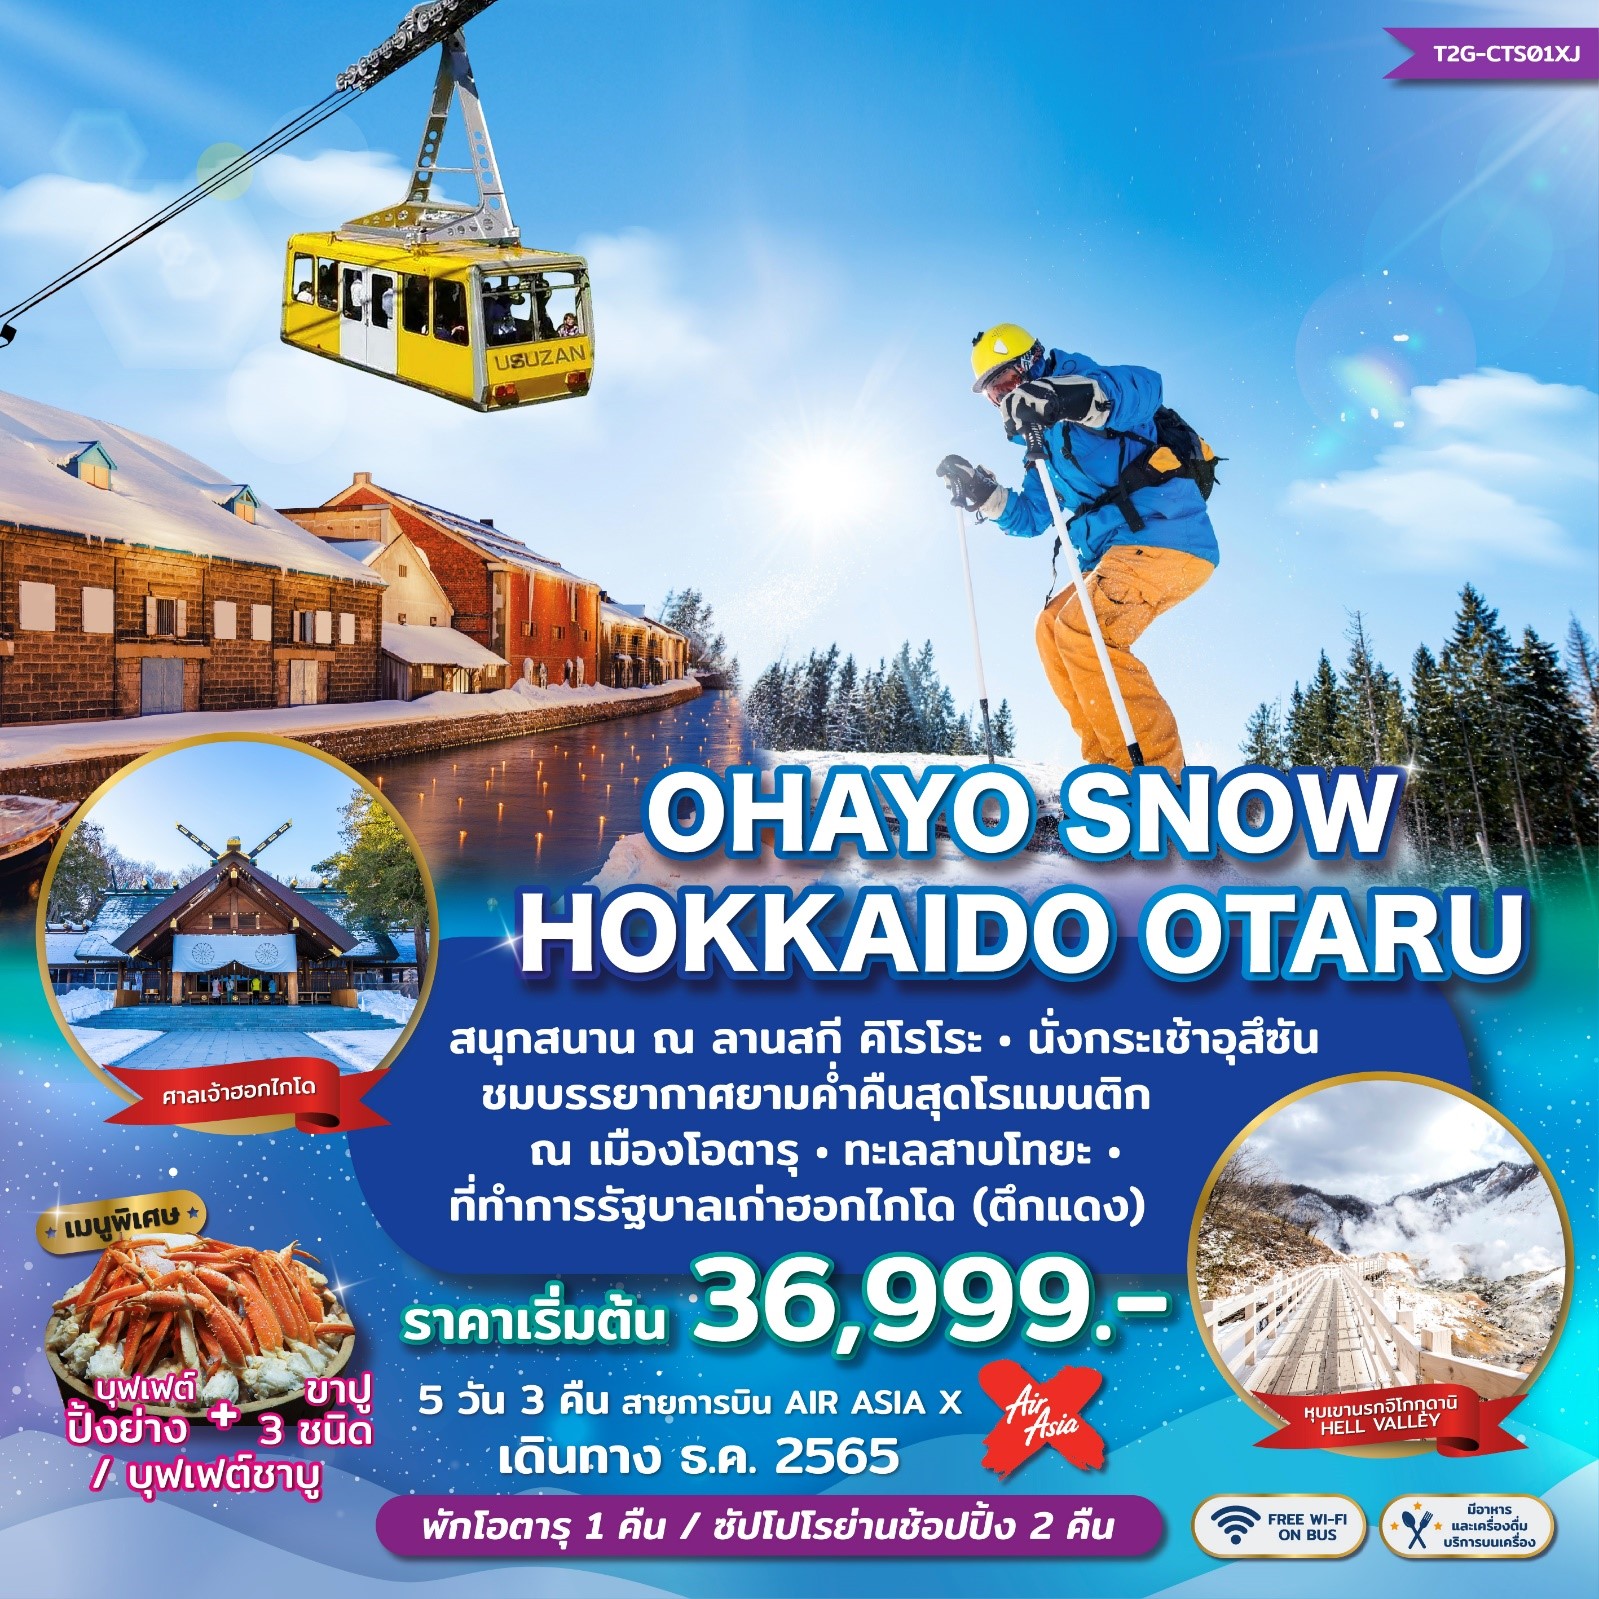 OHAYO SNOW HOKKAIDO OTARU